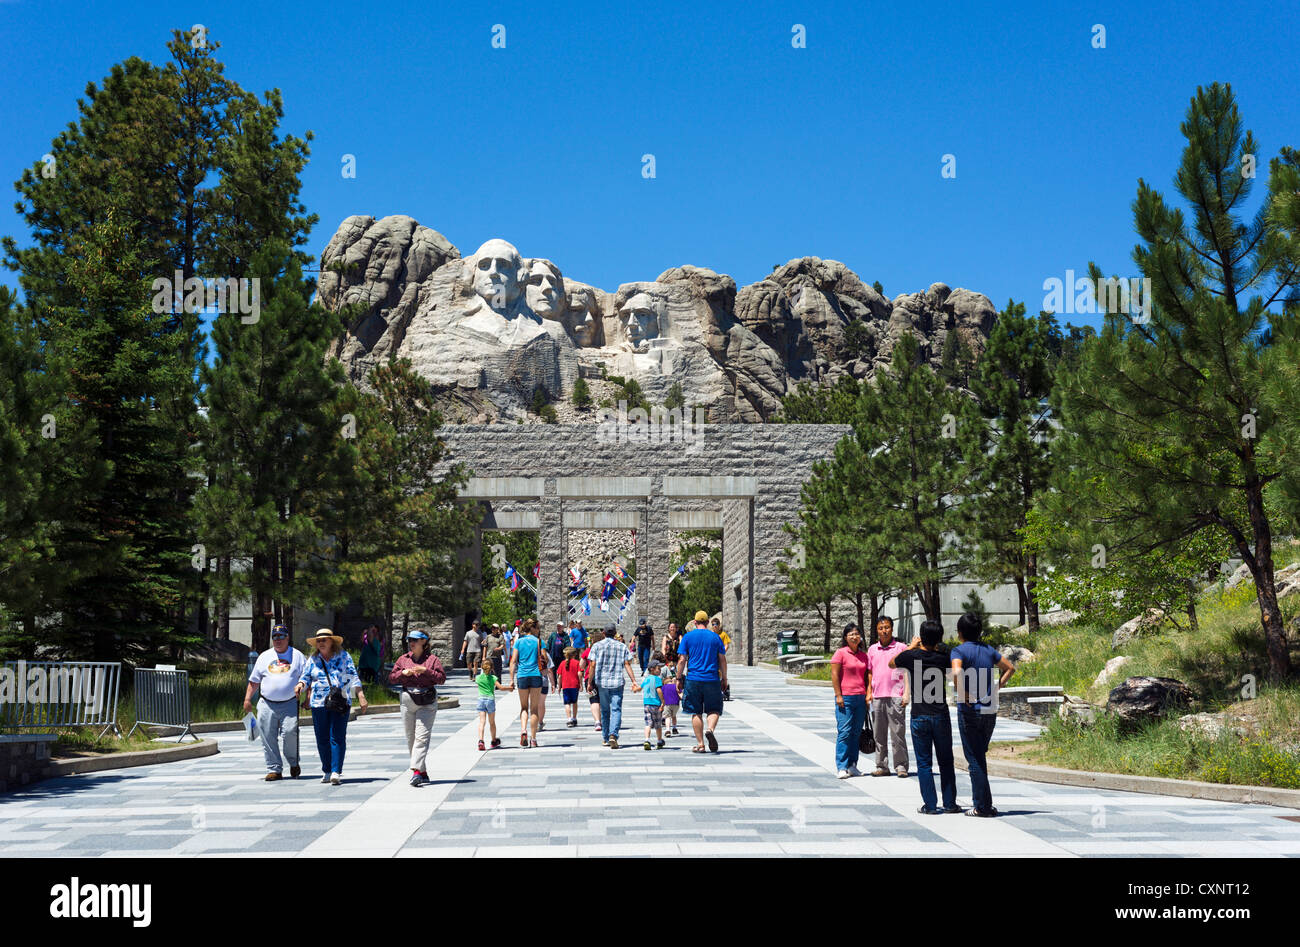 Les touristes à Mount Rushmore National Memorial sur chemin menant à Grand View Terrace dans la zone de visualisation, Black Hills, Dakota du Sud, USA Banque D'Images